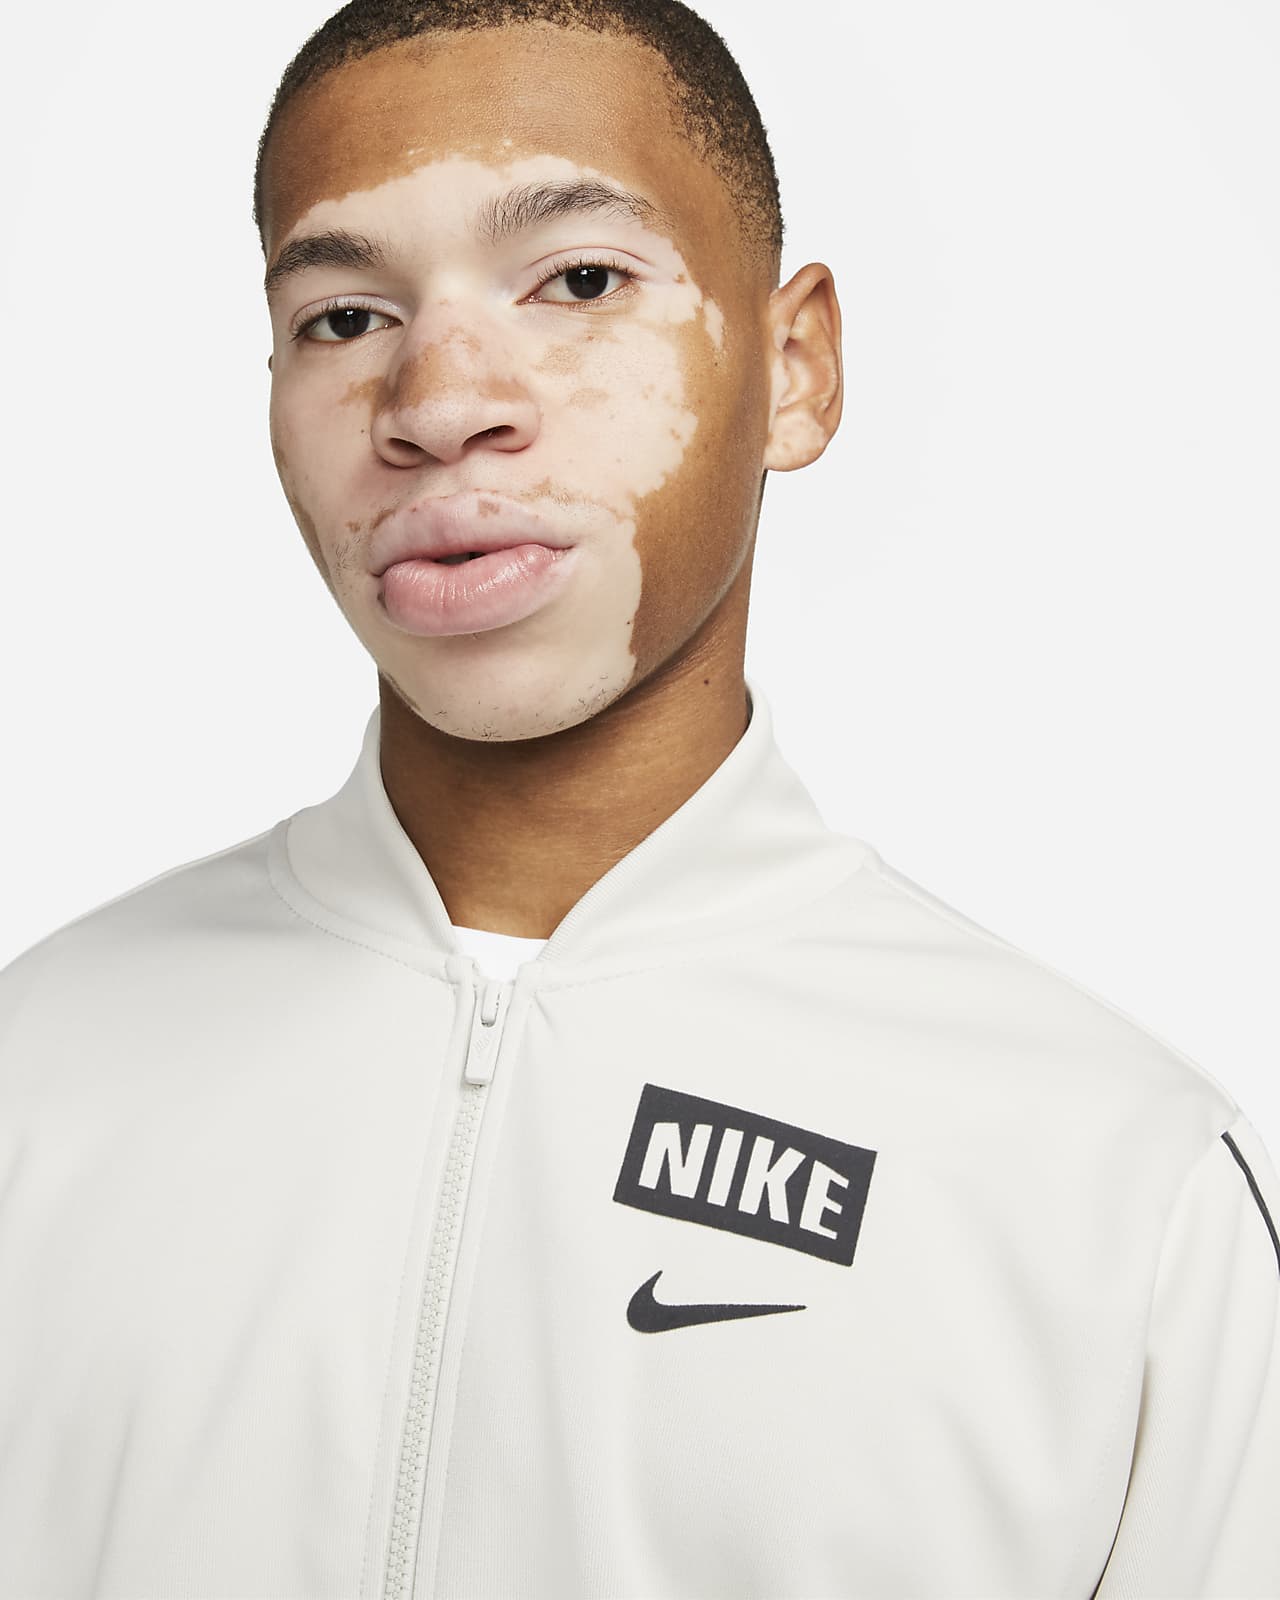 Nike Sportswear Men's Retro Bomber Jacket. CA